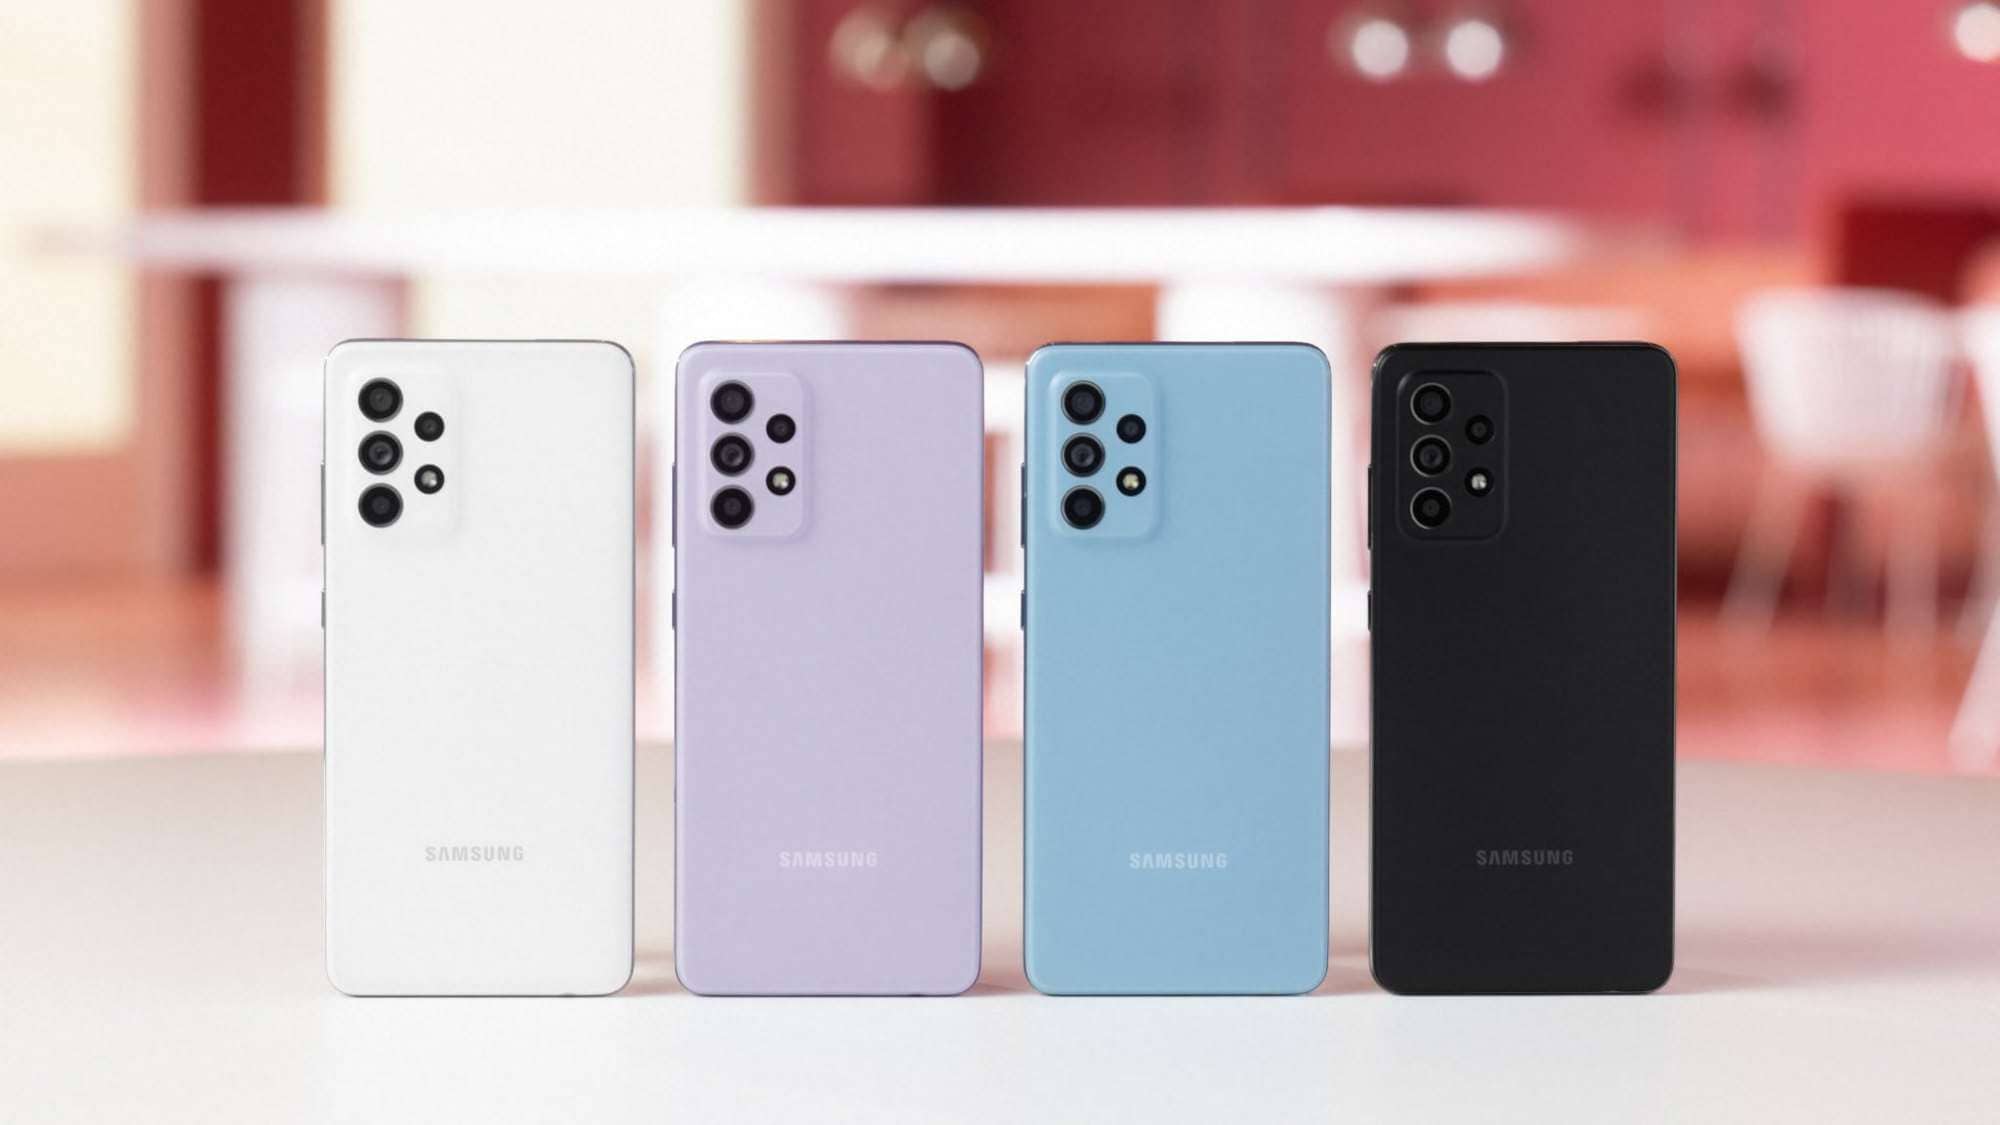 ซัมซุง เปิดตัว Galaxy A52, A52 5G และ A72 นวัตกรรมสมาร์ทโฟนสุดล้ำ ในราคาที่ทุกคนเข้าถึงได้ 1